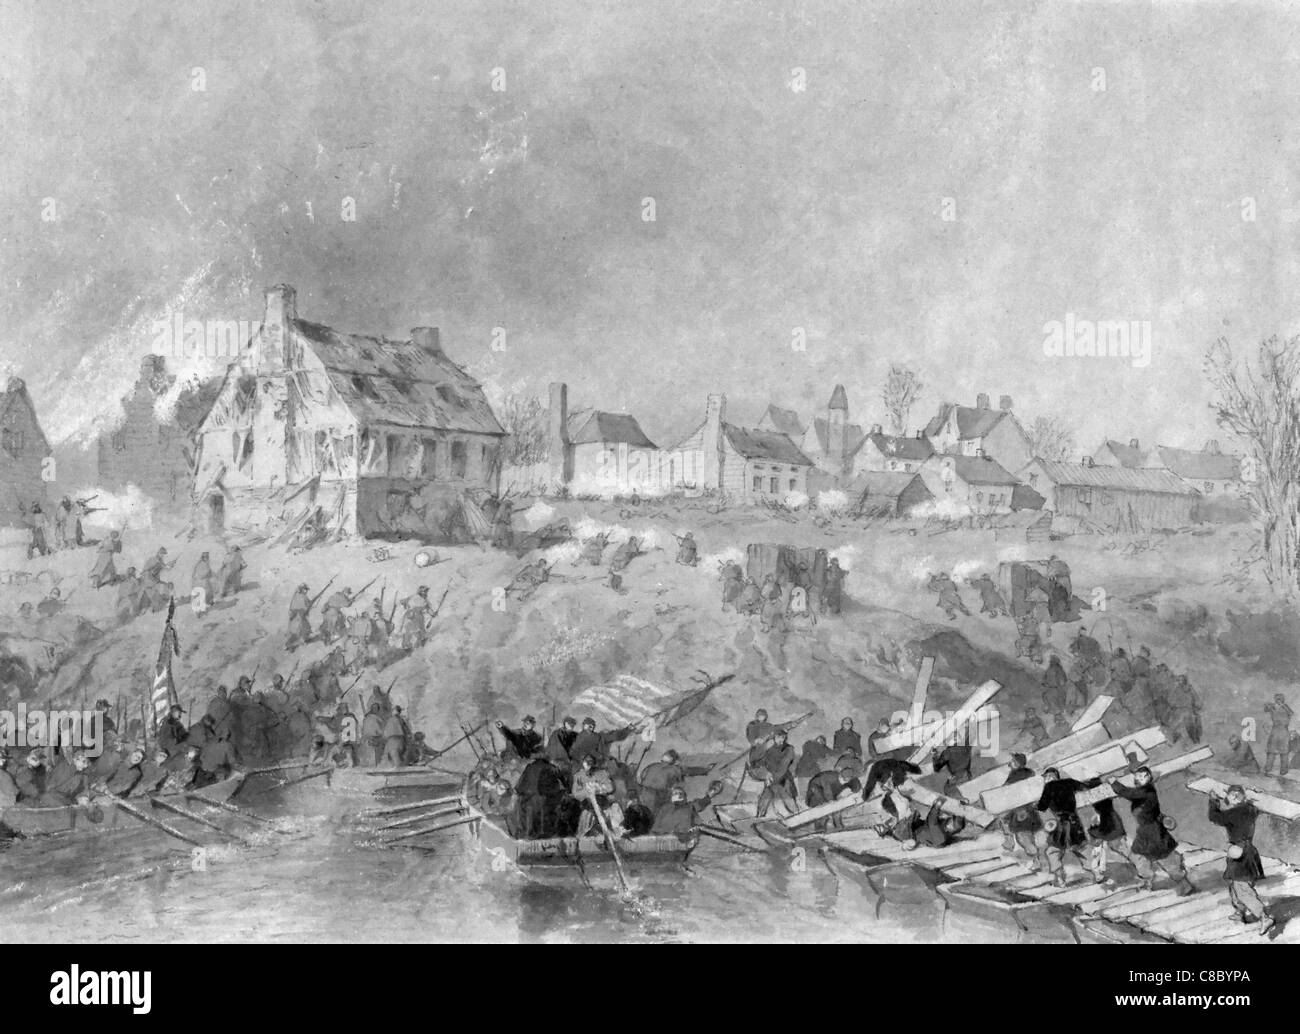 Angriff auf Fredericksburg - Union Truppen landen am Ufer des Flusses, Pontonbrücken, 1862 USA Bürgerkrieg hochziehen Stockfoto